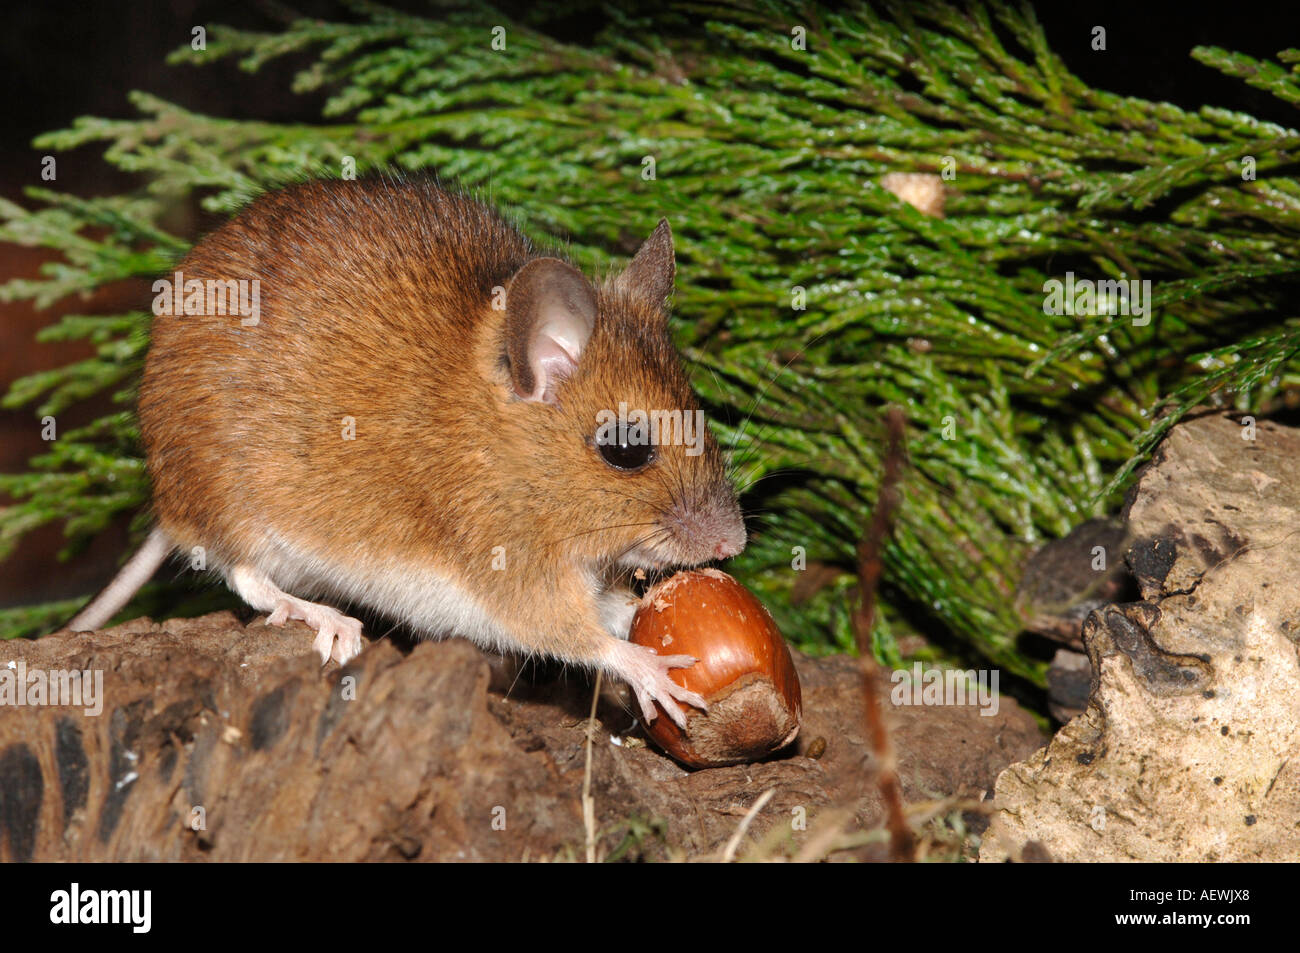 woodmouse eating a hazel nut Stock Photo